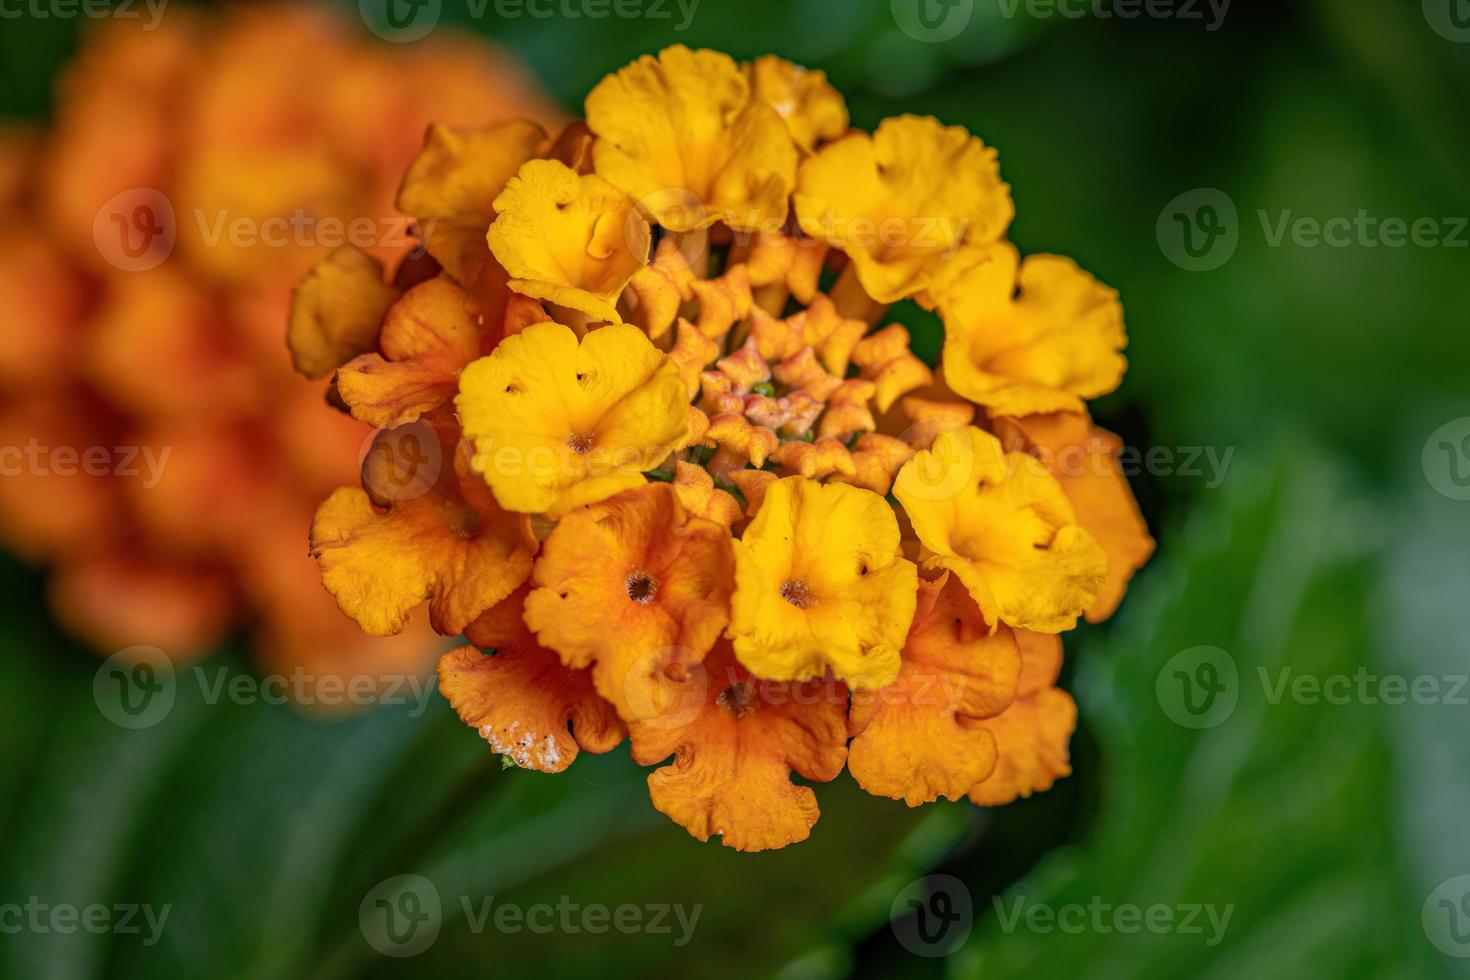 flor de lantana común foto